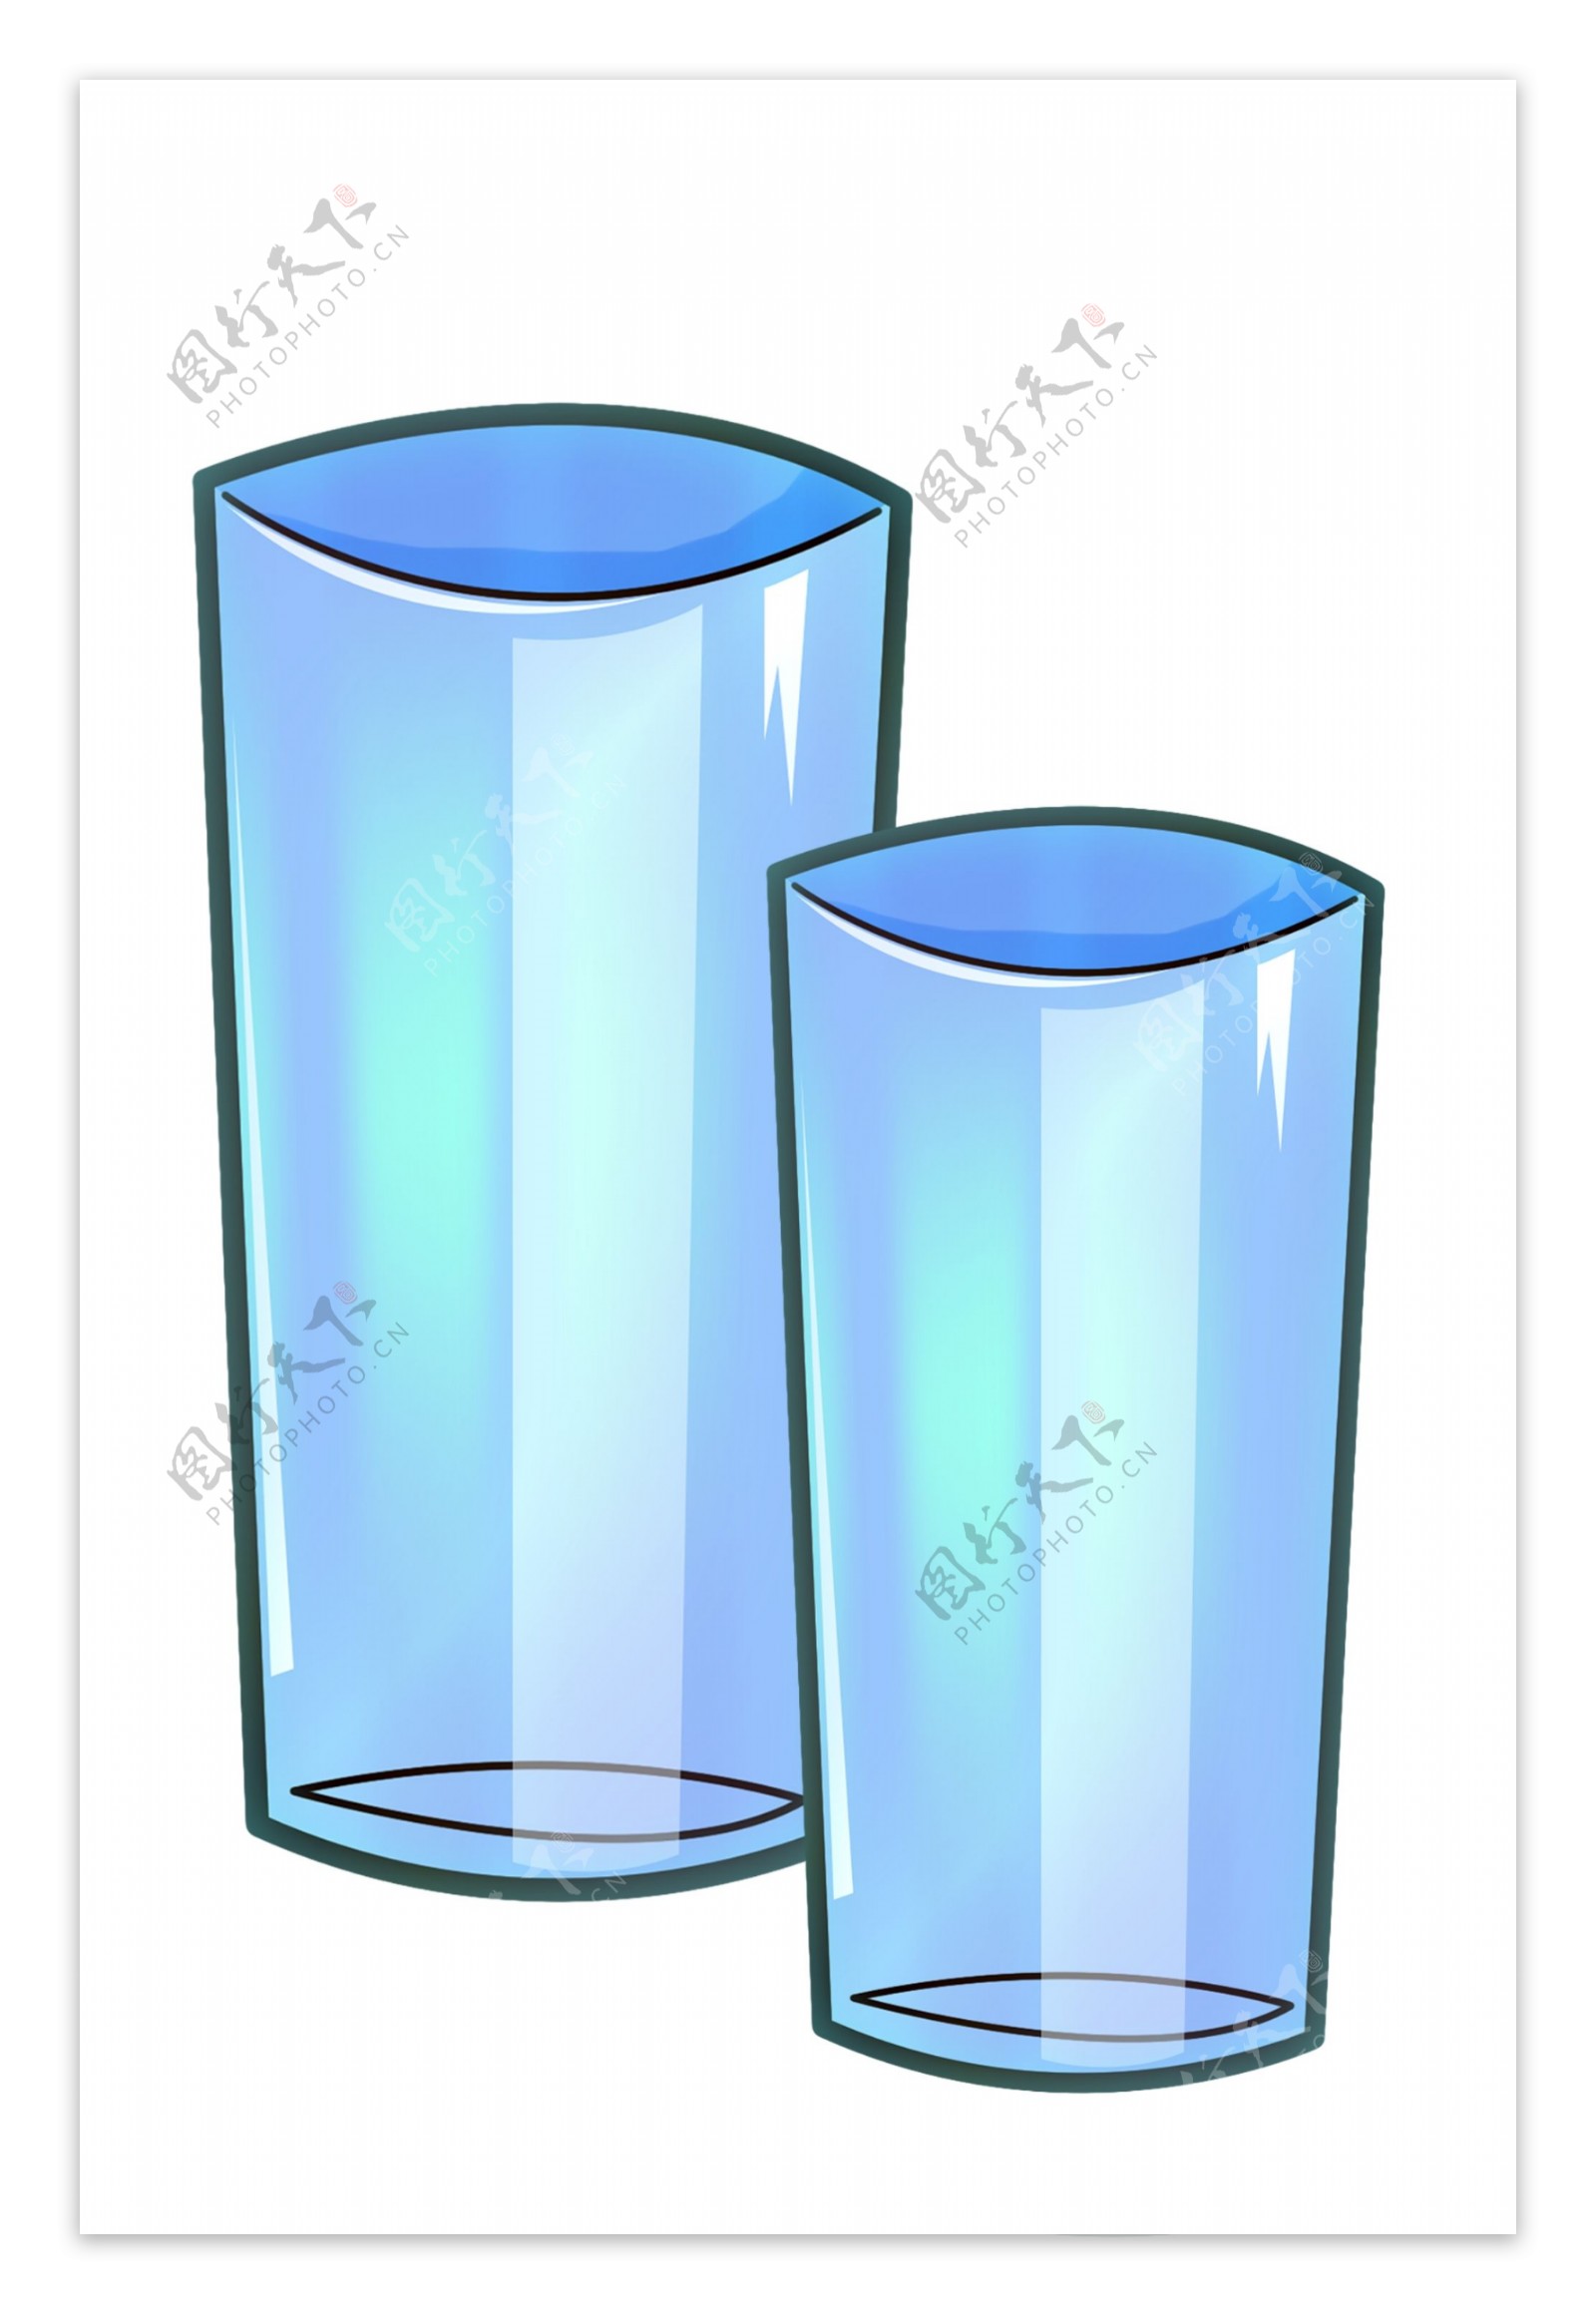 两个蓝色玻璃杯